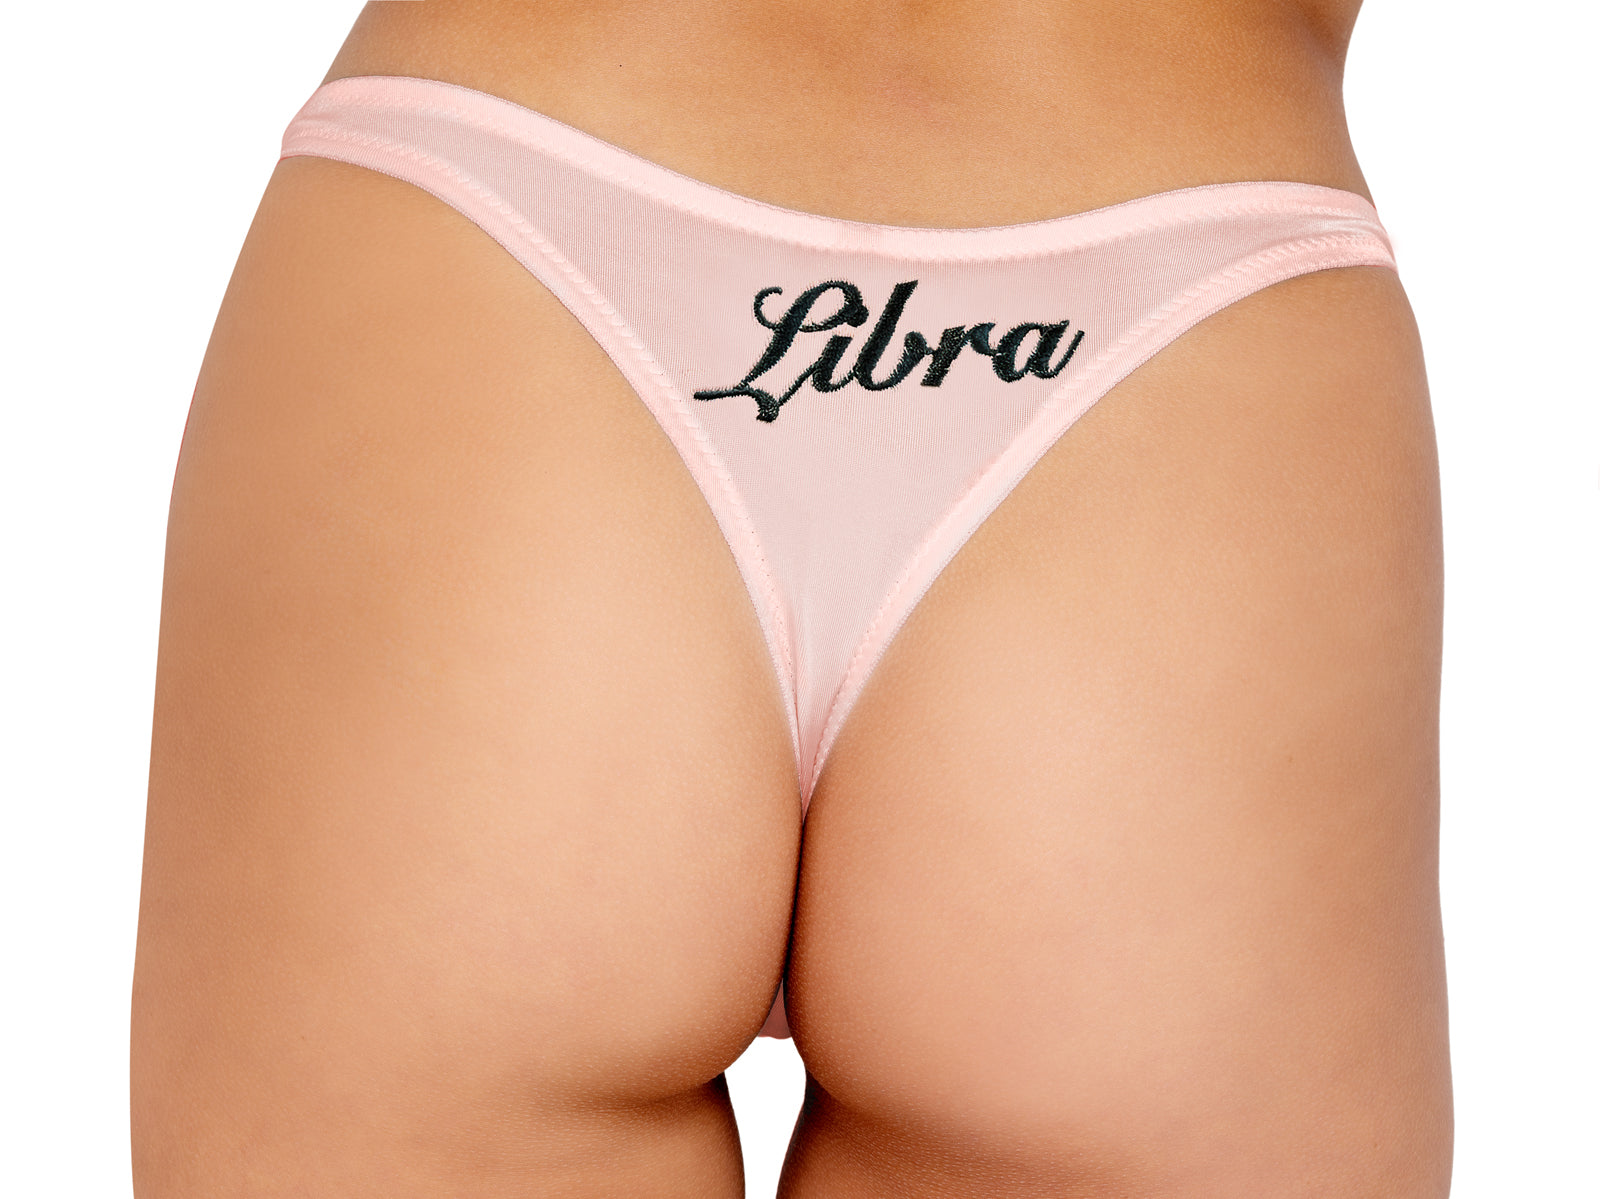 LI530 - Zodiac Libra Panty Eye Candy Sensation